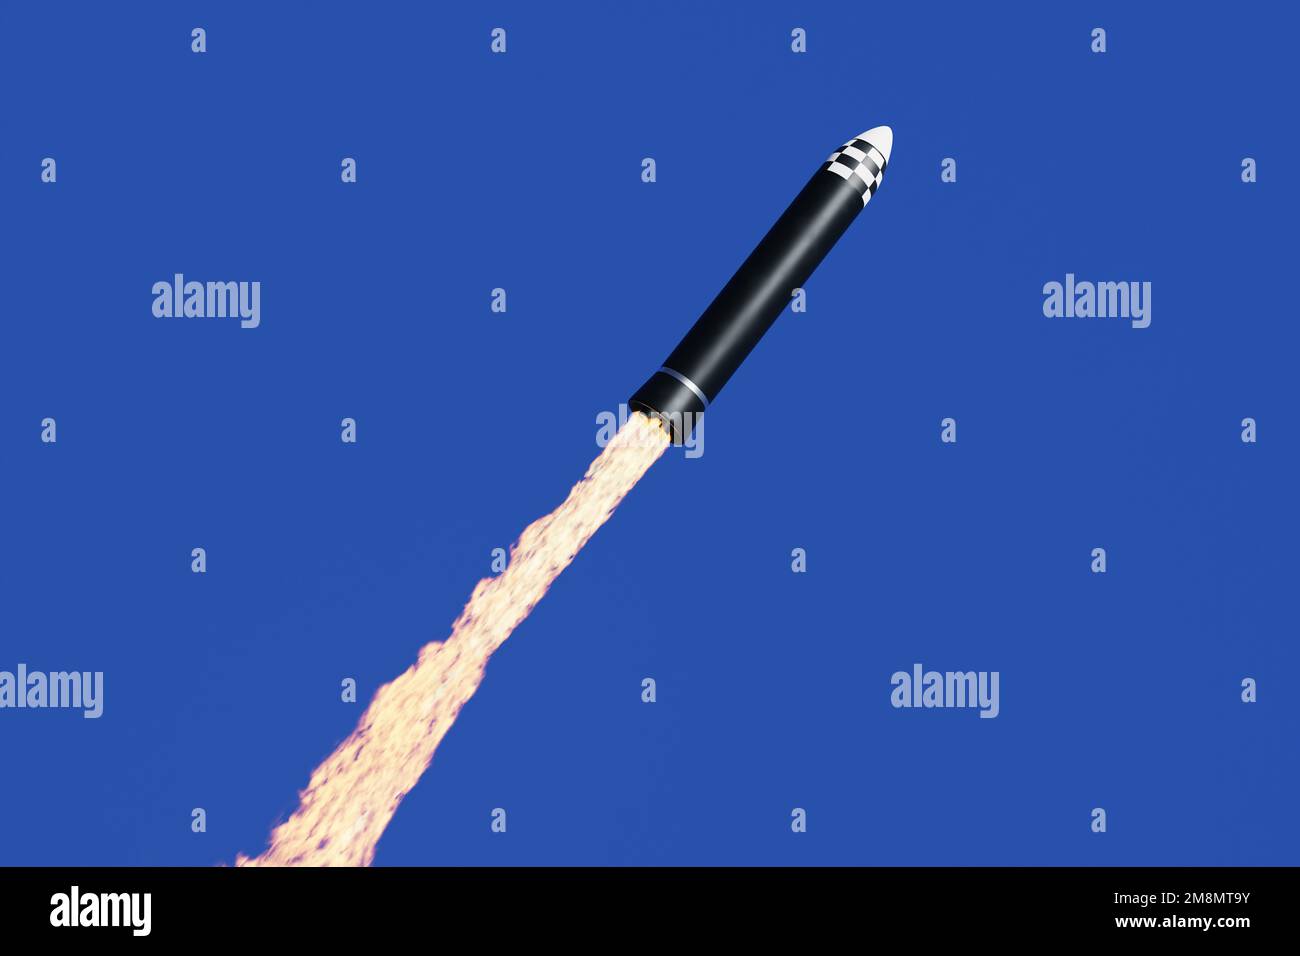 Raketen mit einem langen Feuerantrieb werden in den blauen Himmel geschossen. Das Konzept der Entwicklung von Satelliten oder nuklearen Sprengköpfen Stockfoto